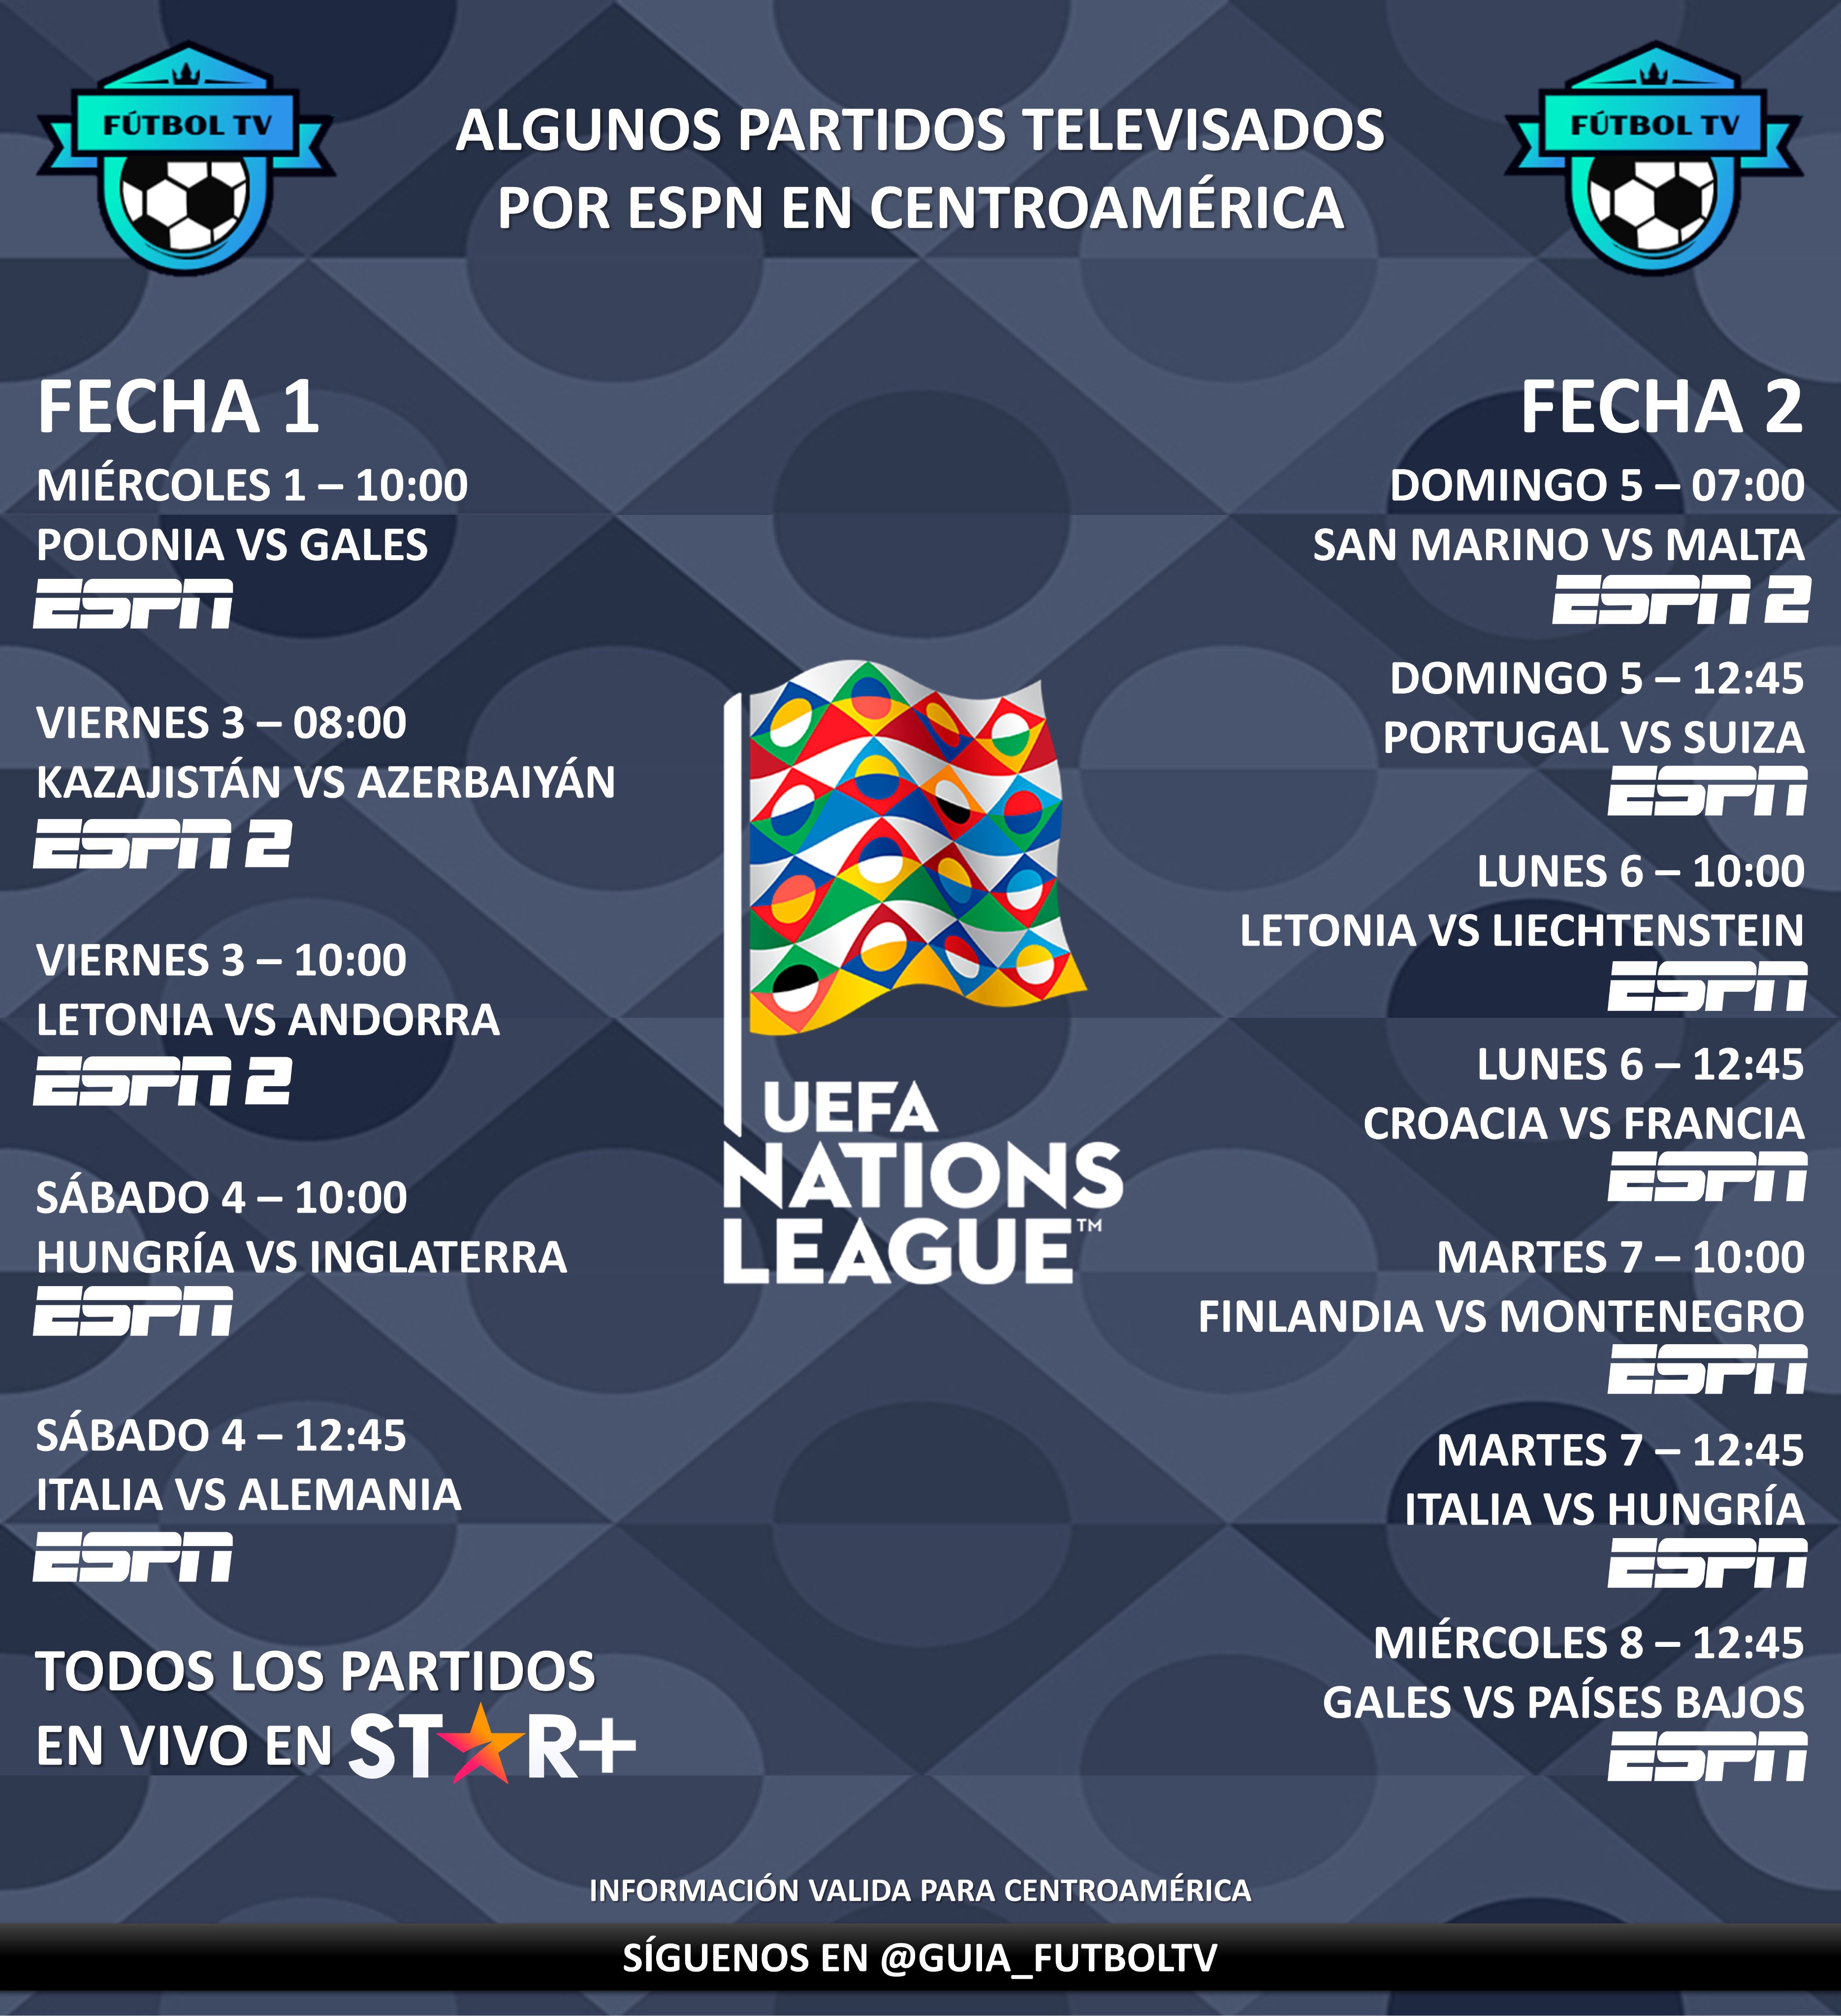 LaGuíaDelMundial 🇶🇦 on Twitter: presentamos algunos partidos televisados de la UEFA Nations League (Fechas 1 y 2) por ESPN en Centroamérica. Recordemos que todos los partidos estarán disponibles en @StarPlusLA (algunos